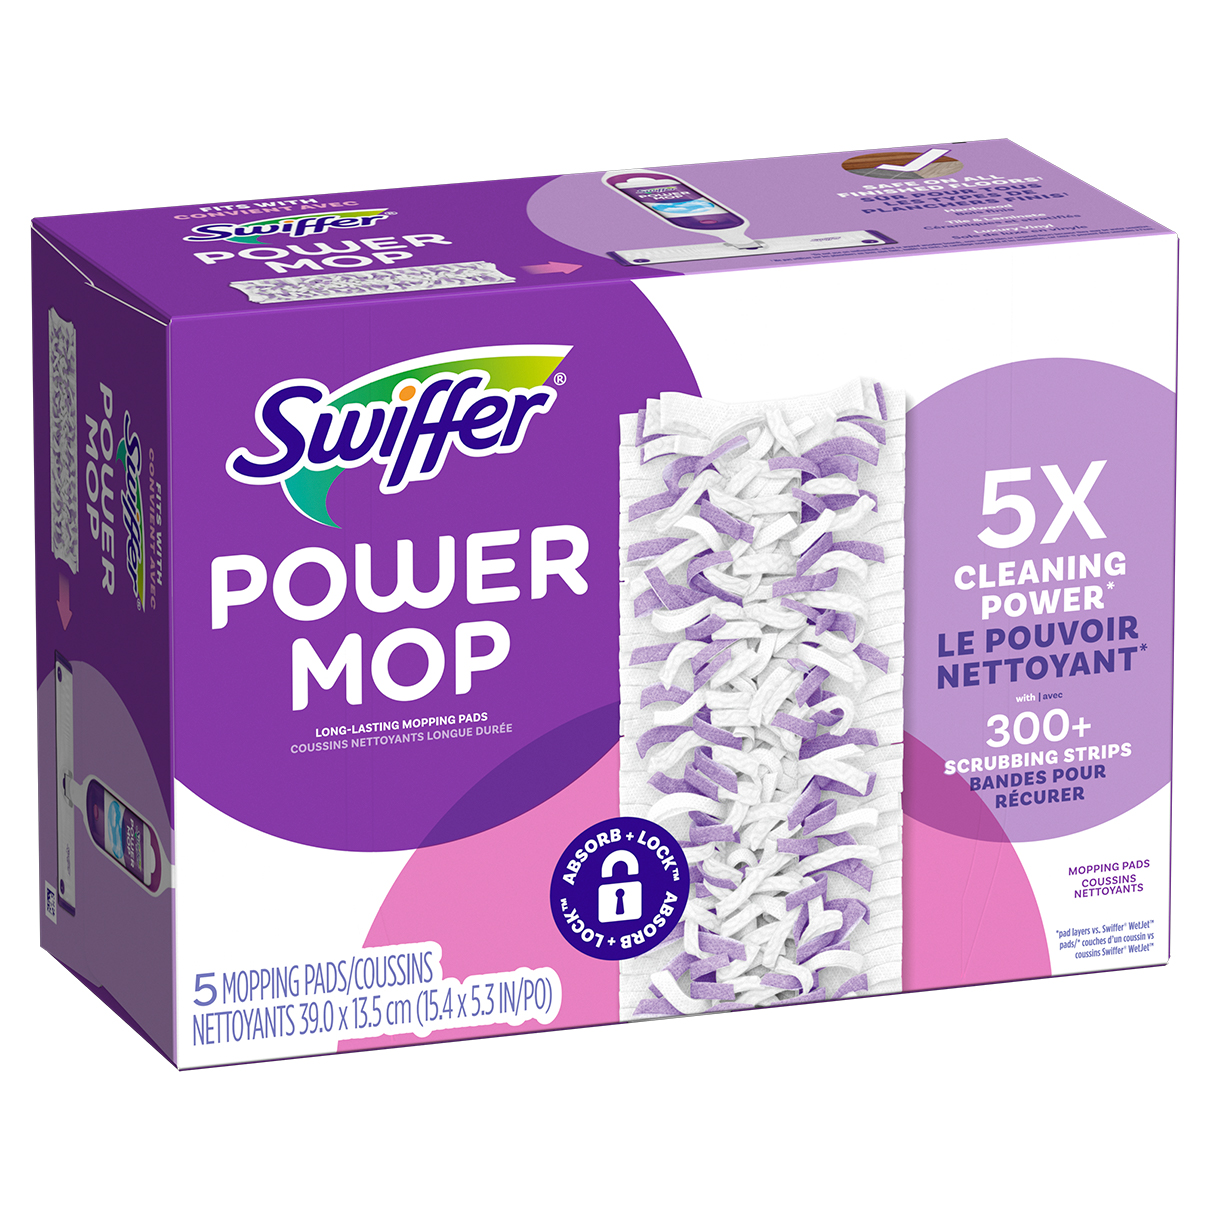 Swiffer PowerMop Kit Mop Multi-superficie per la pulizia del pavimento,  profumo fresco, Kit di pulizia